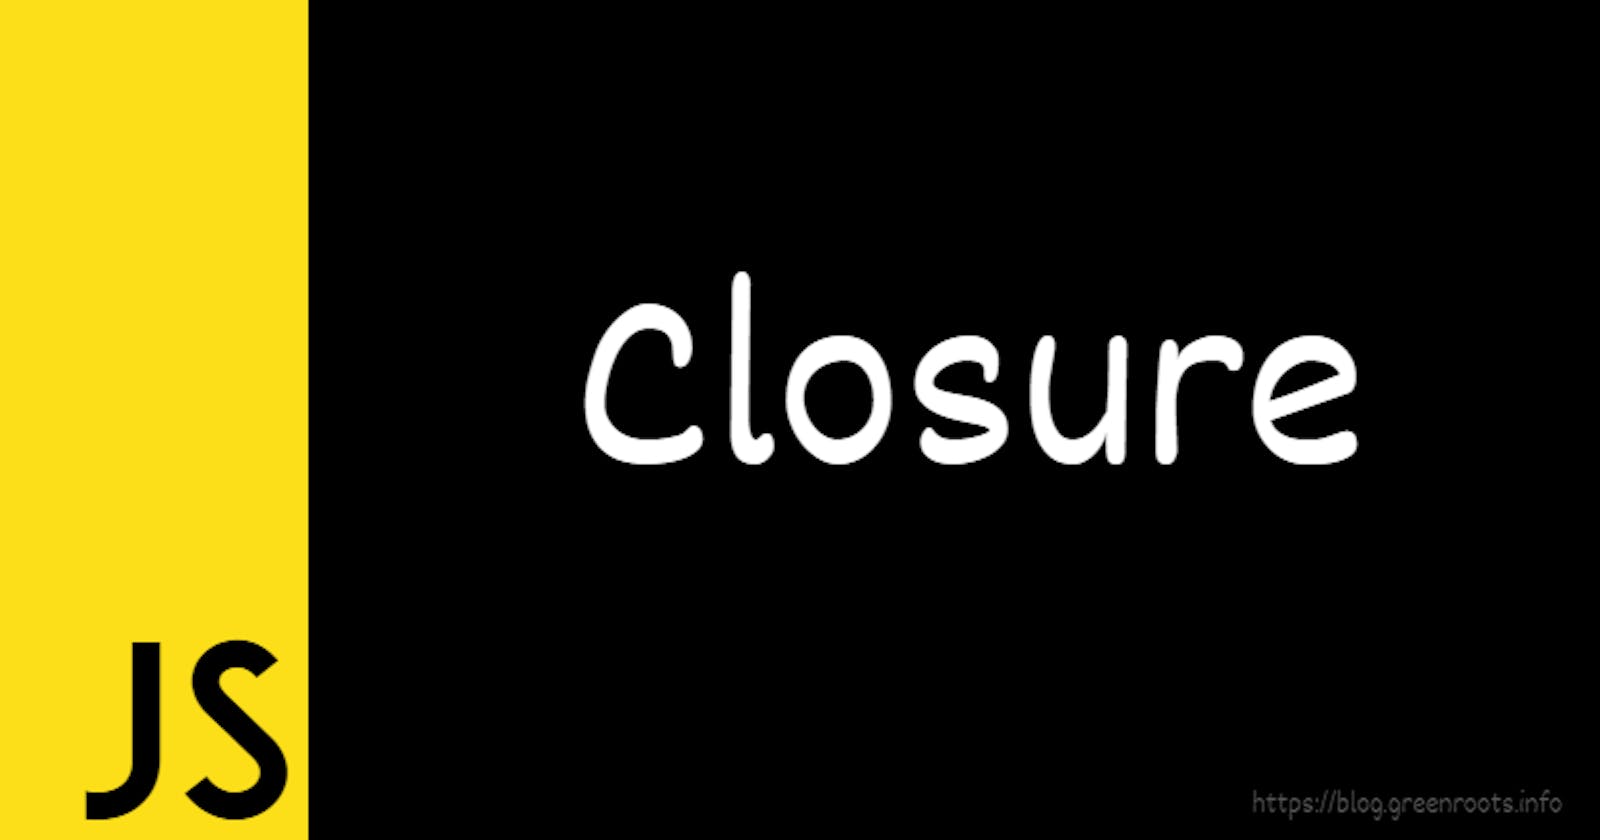 closure examples